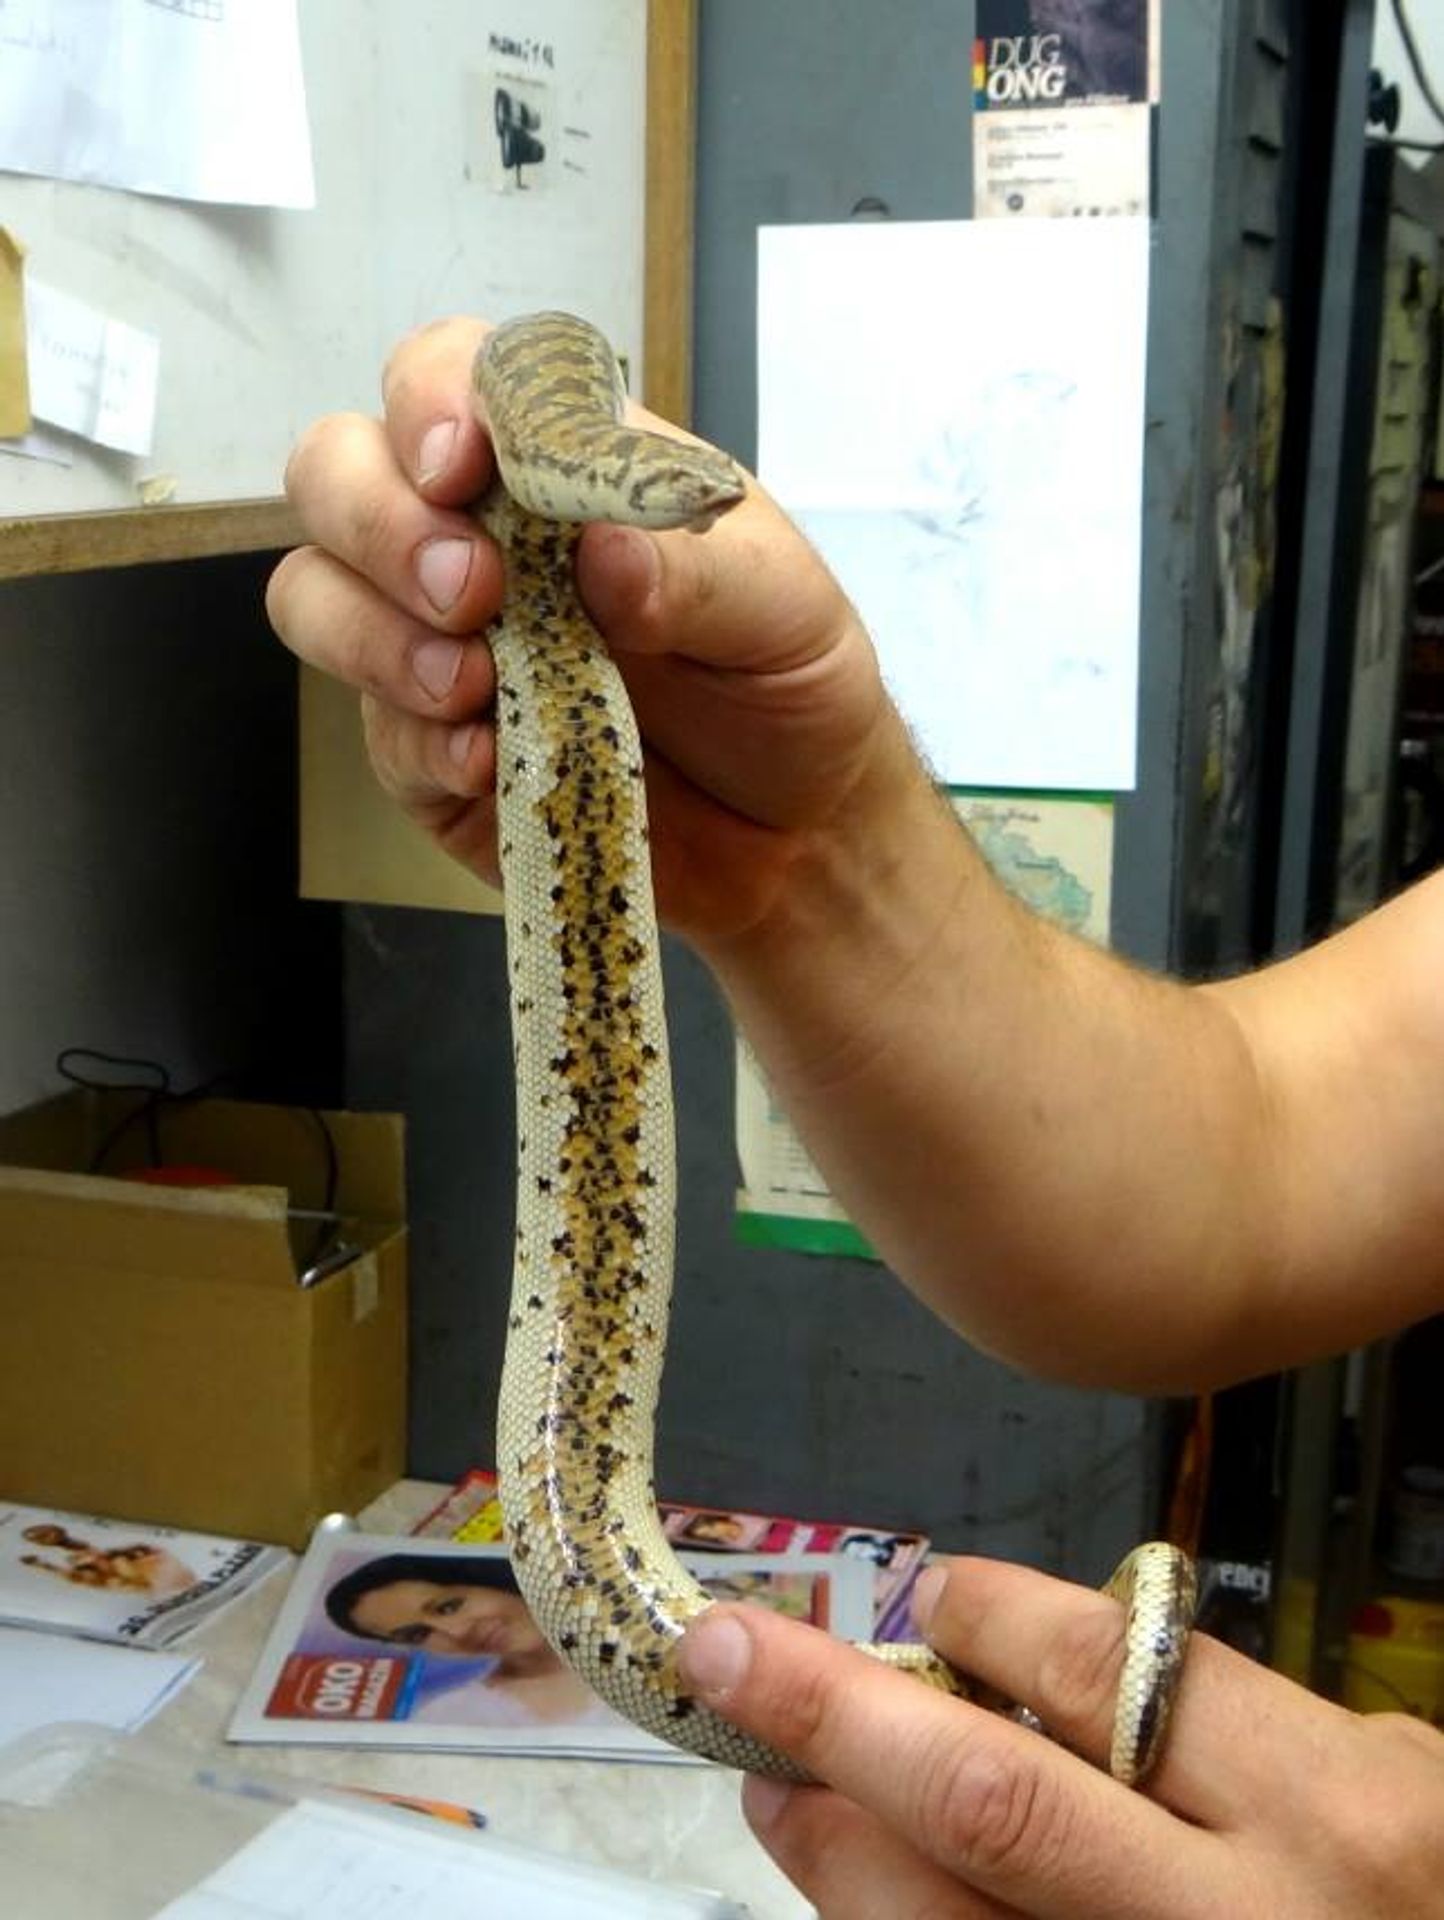 Po hotelovém pokoji se plazil tento had - GALERIE: Had žil ukrytý několik měsíců v plzeňském hotelu, vystrašil pokojskou (1/4)